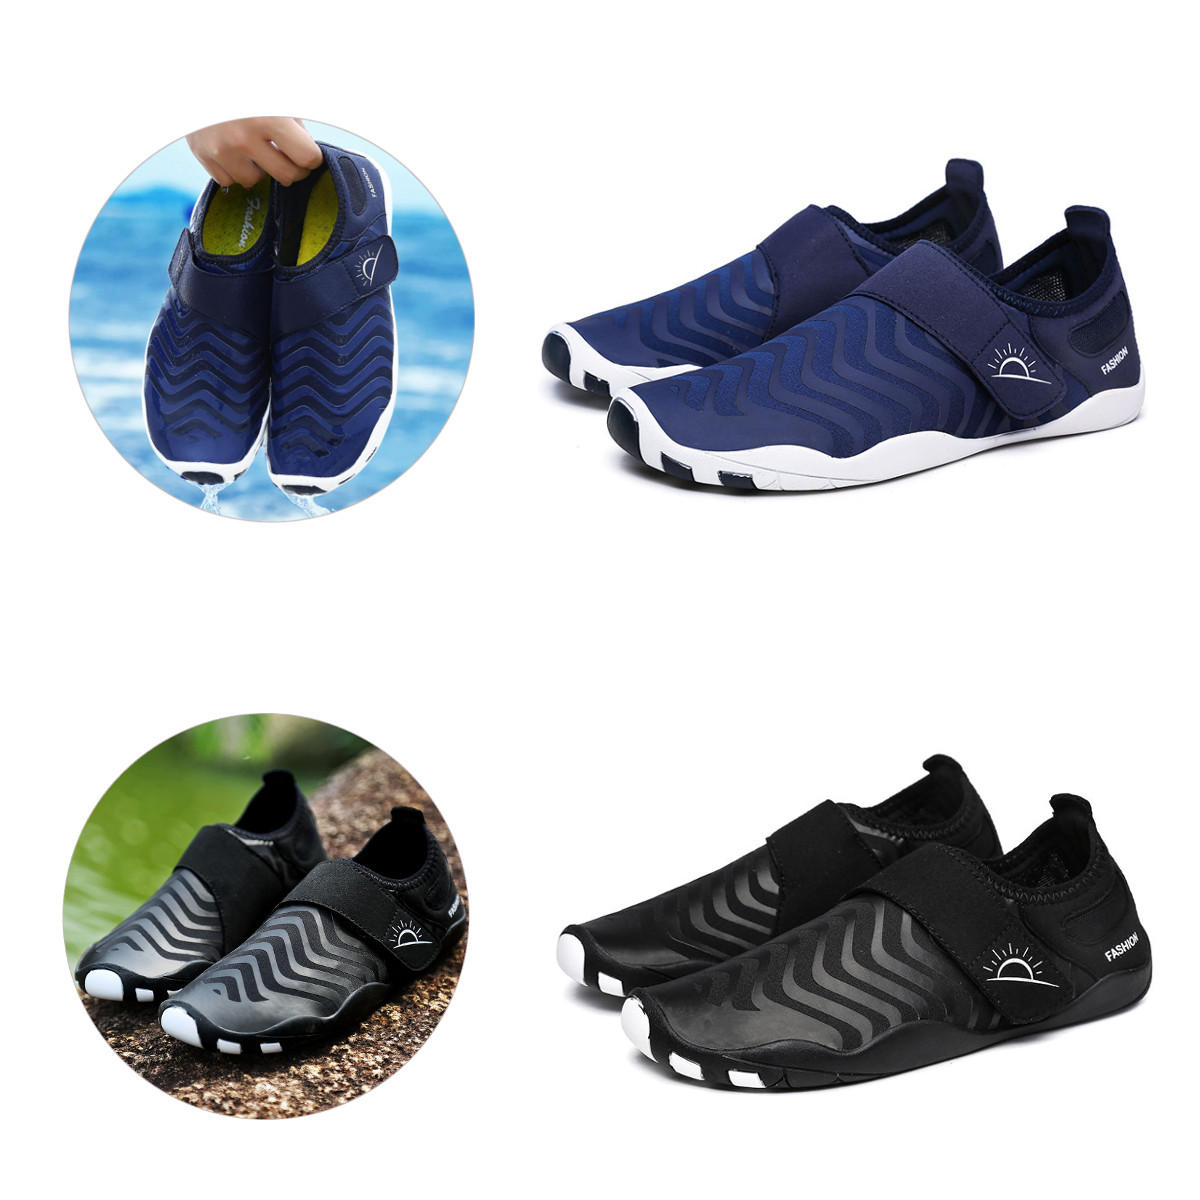 Scarpe da pesca a strisce ultraleggere, asciugatura rapida, facili da indossare, adatte per sport all'aperto, nuoto e yoga.